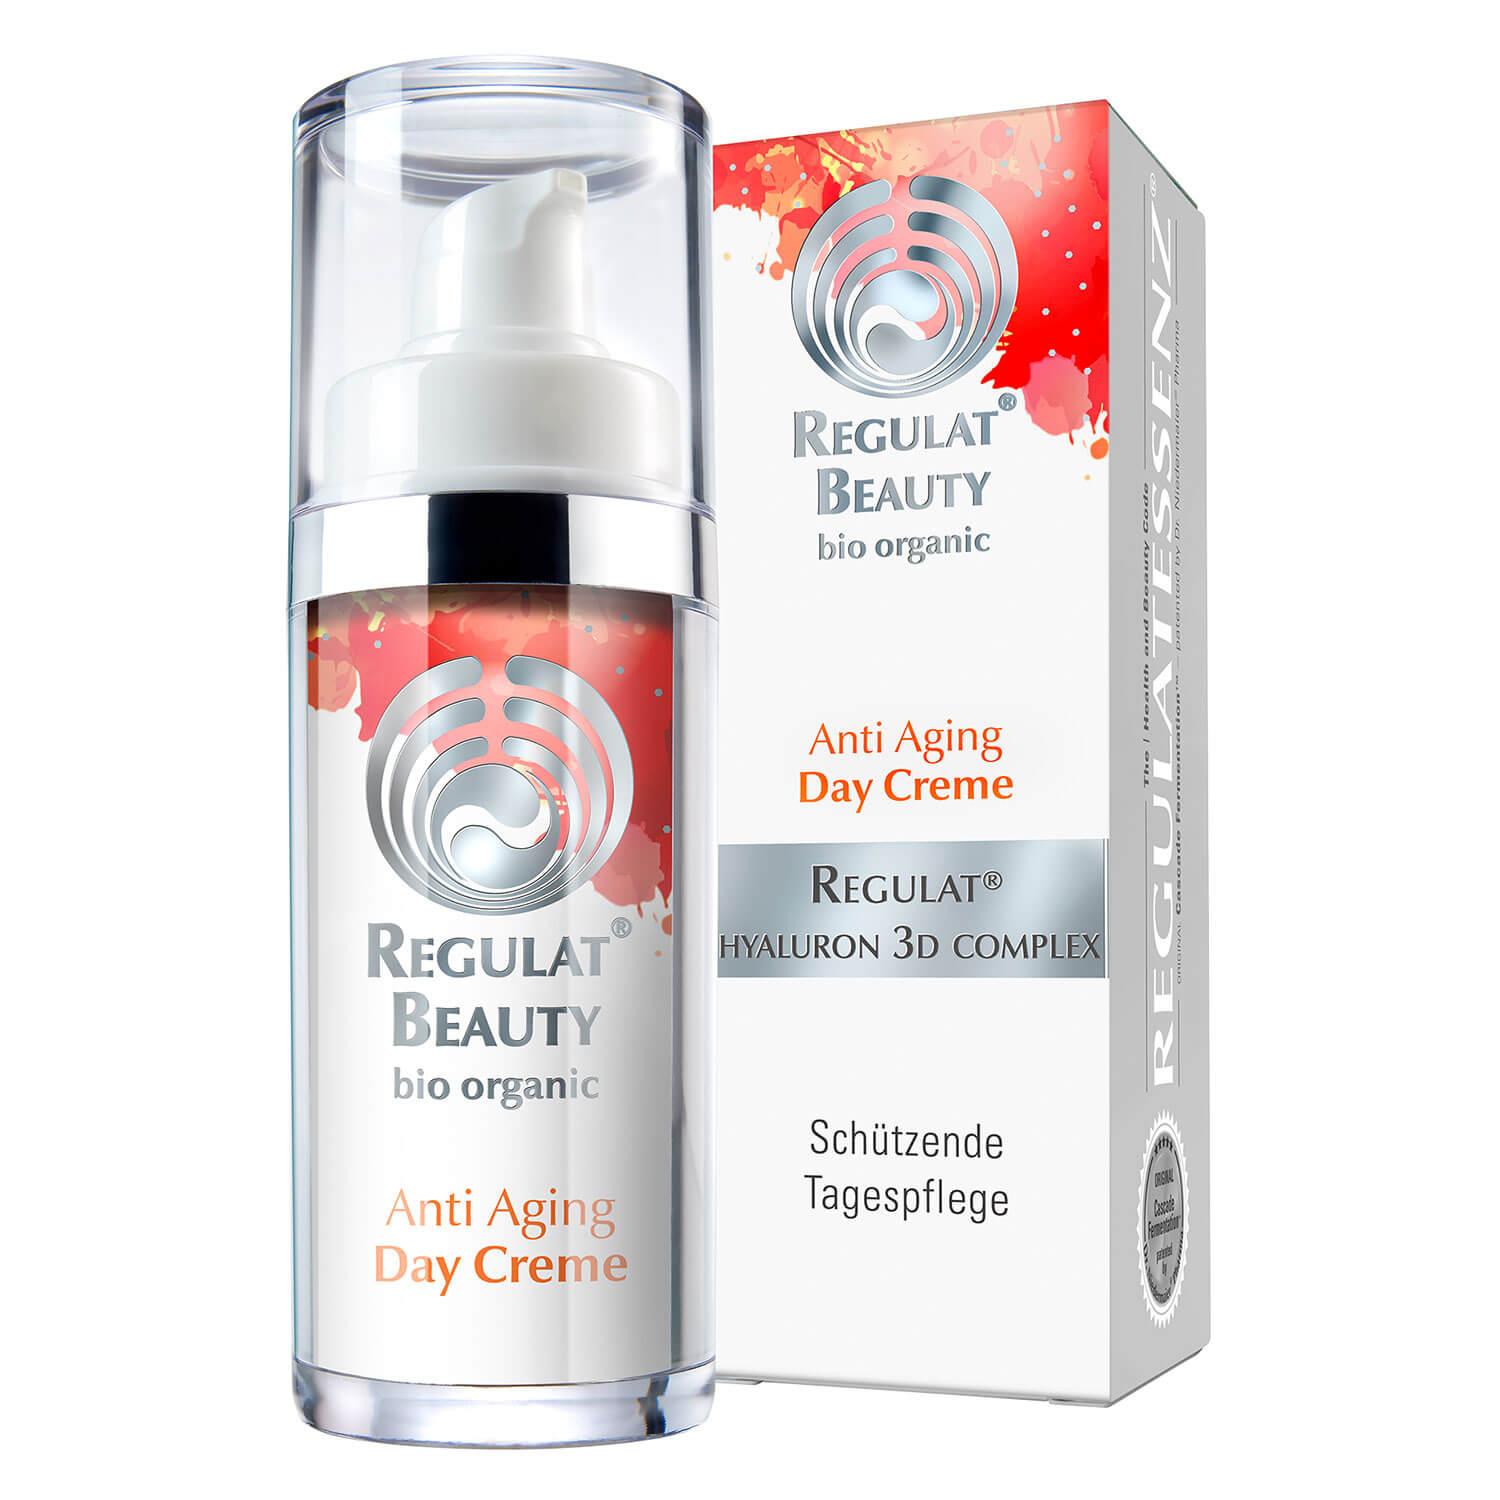 Regulat® Beauty - Anti Aging Day Creme